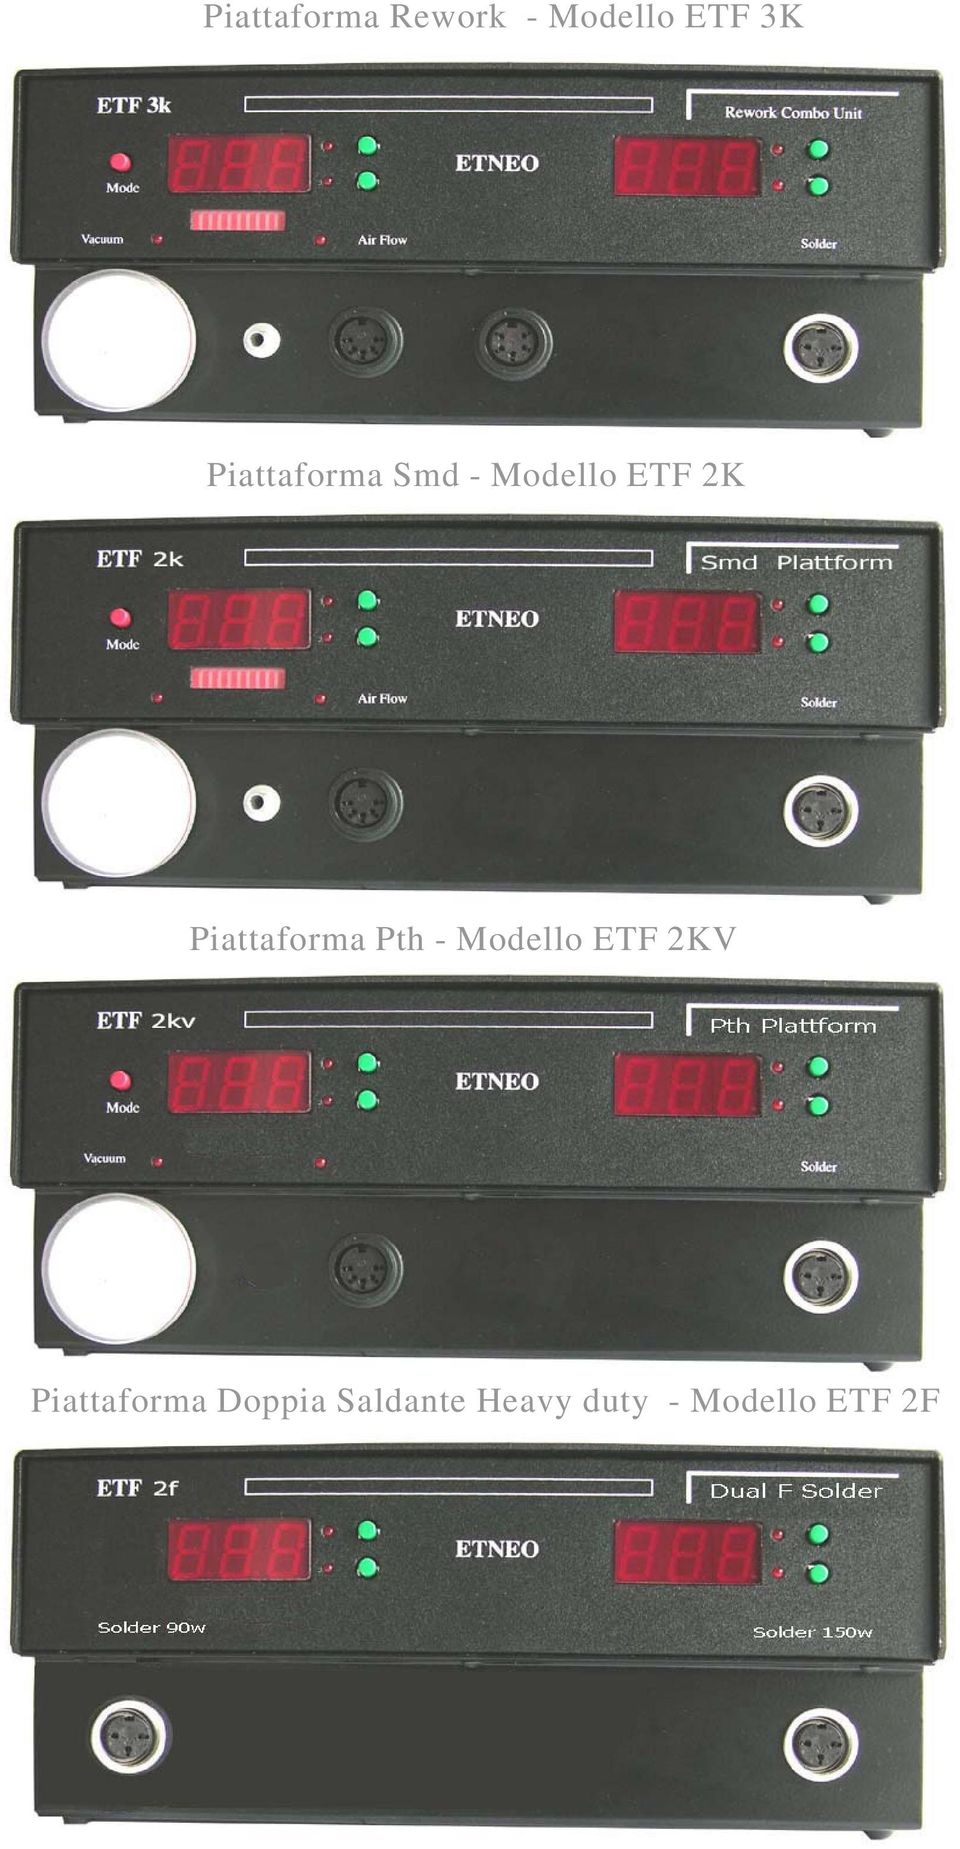 Piattaforma Pth - Modello ETF 2KV